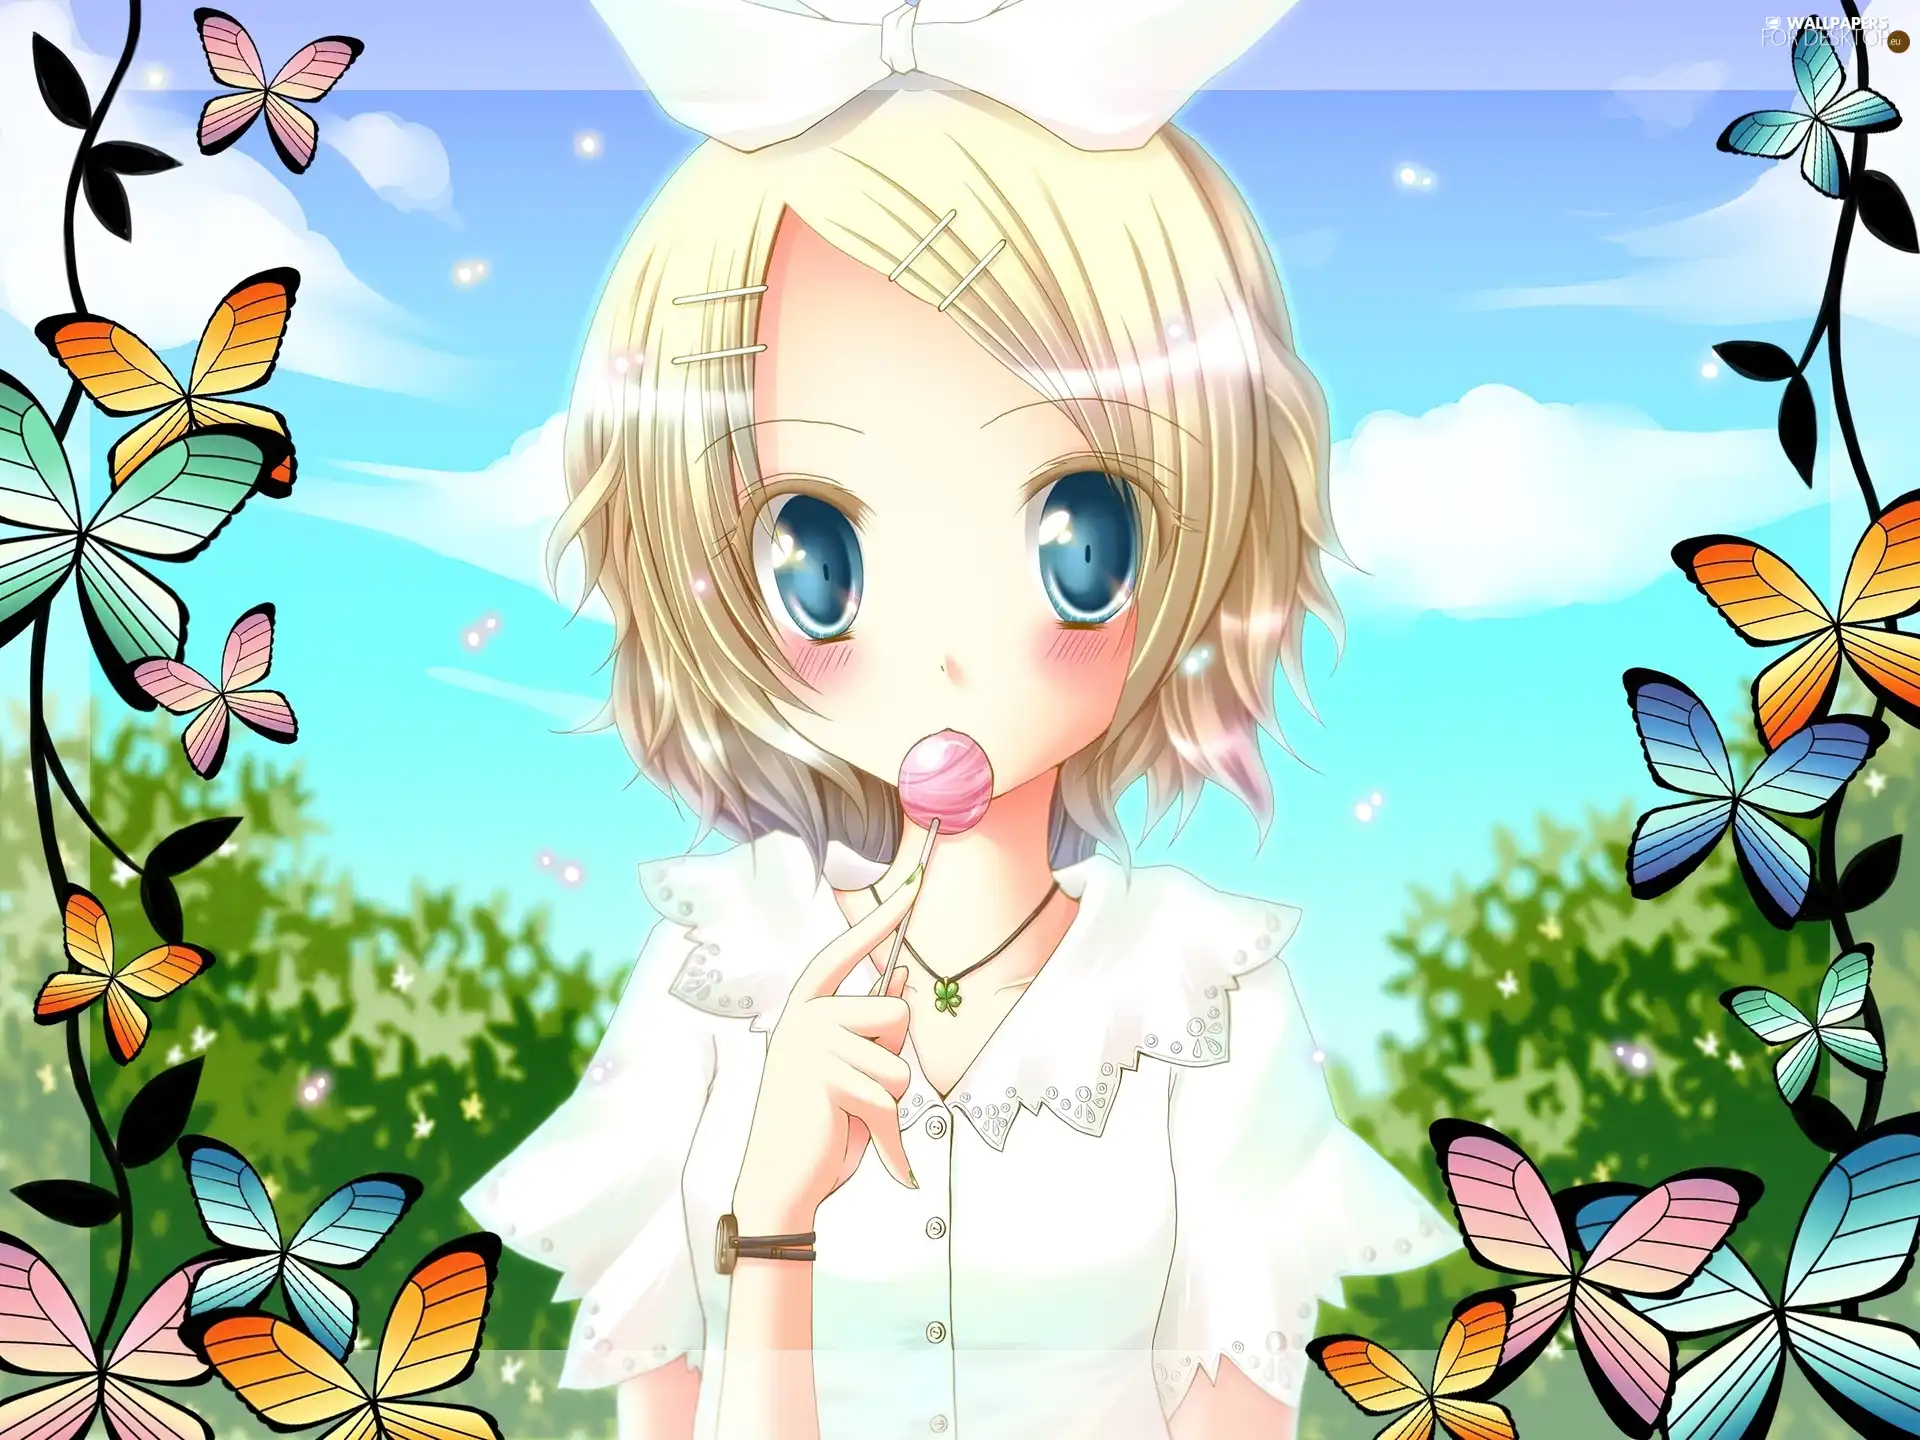 Vocaloid, Lollipop, butterflies, Rin Kagamine